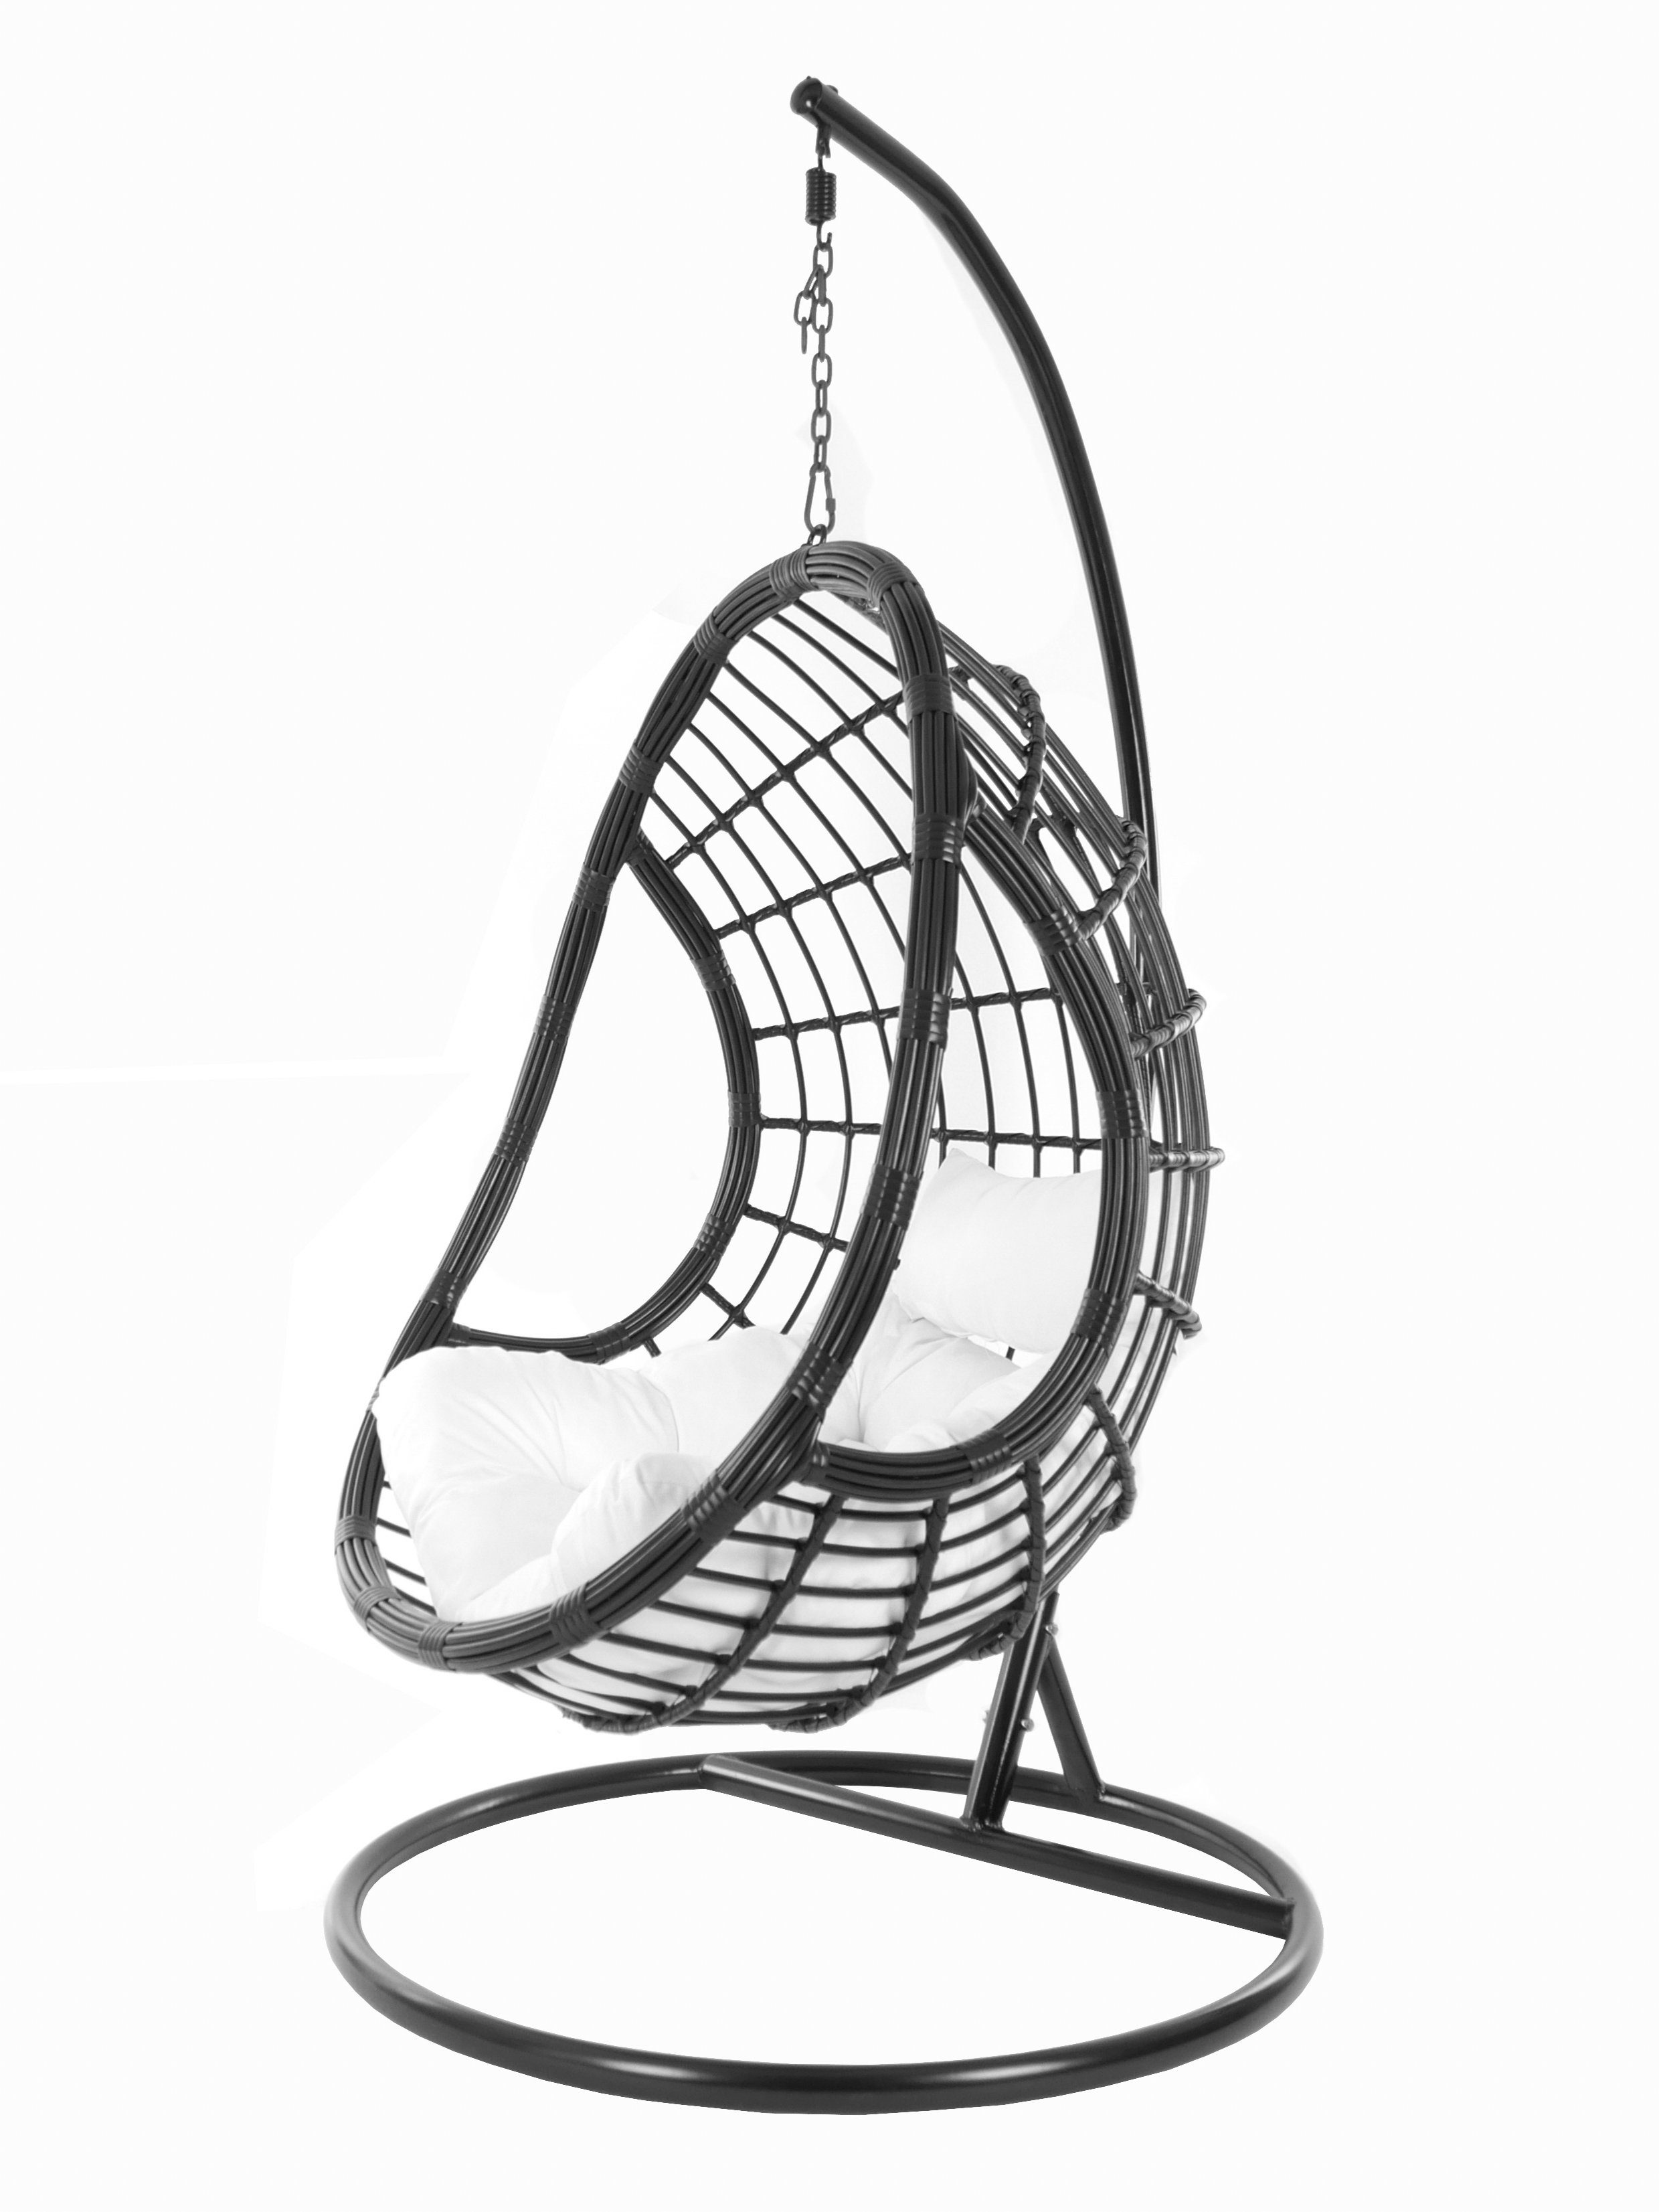 KIDEO Hängesessel »PALMANOVA black«, Swing Chair, schwarz, Loungemöbel,  Hängesessel mit Gestell und Kissen, Schwebesessel, edles Design online  kaufen | OTTO